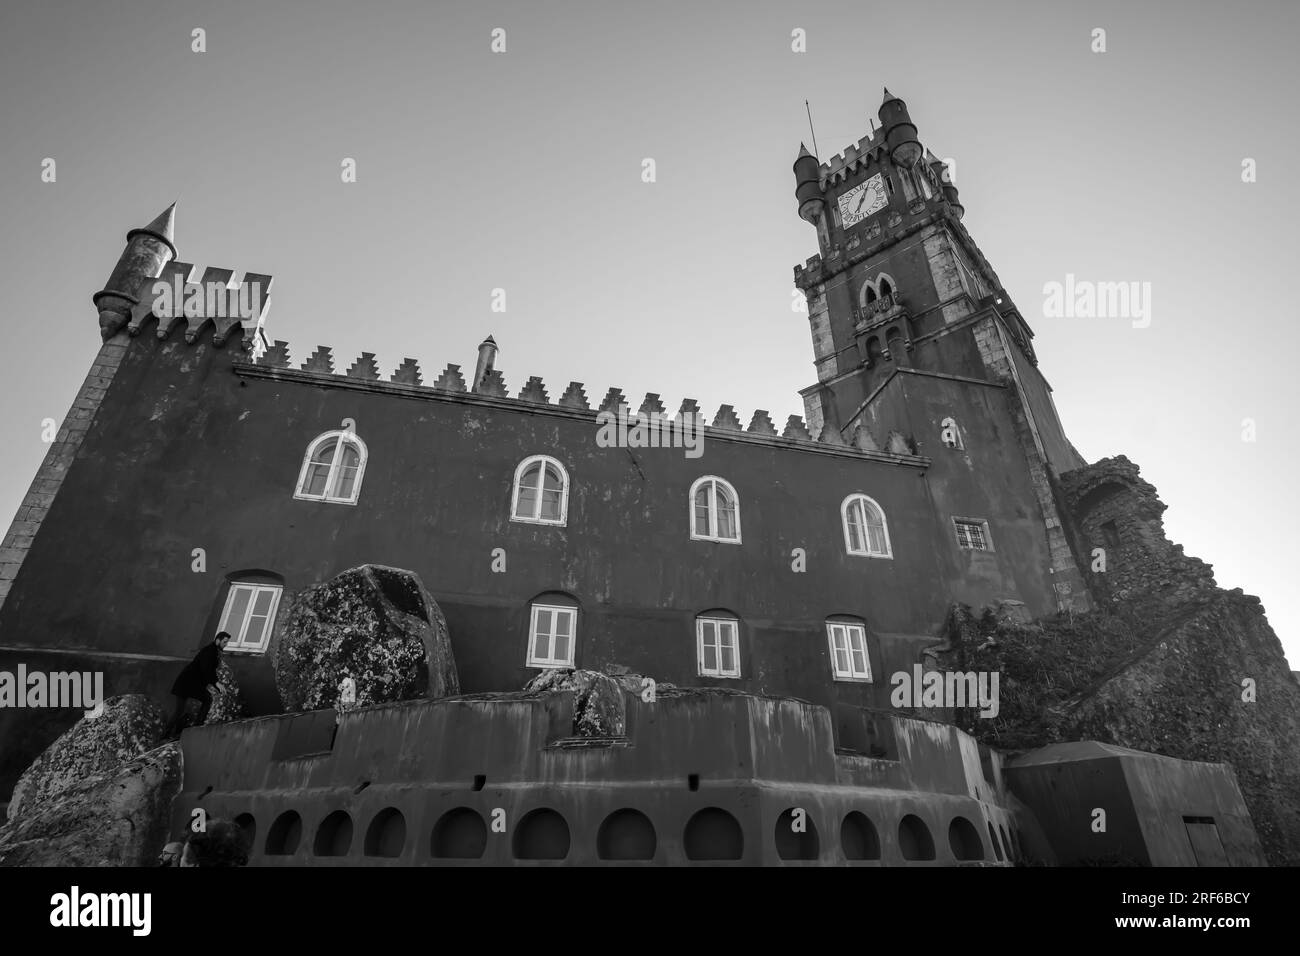 Sintra, Portugal - 5 janvier 2020 : le palais de Pena dans la municipalité de Sintra au Portugal en noir et blanc Banque D'Images